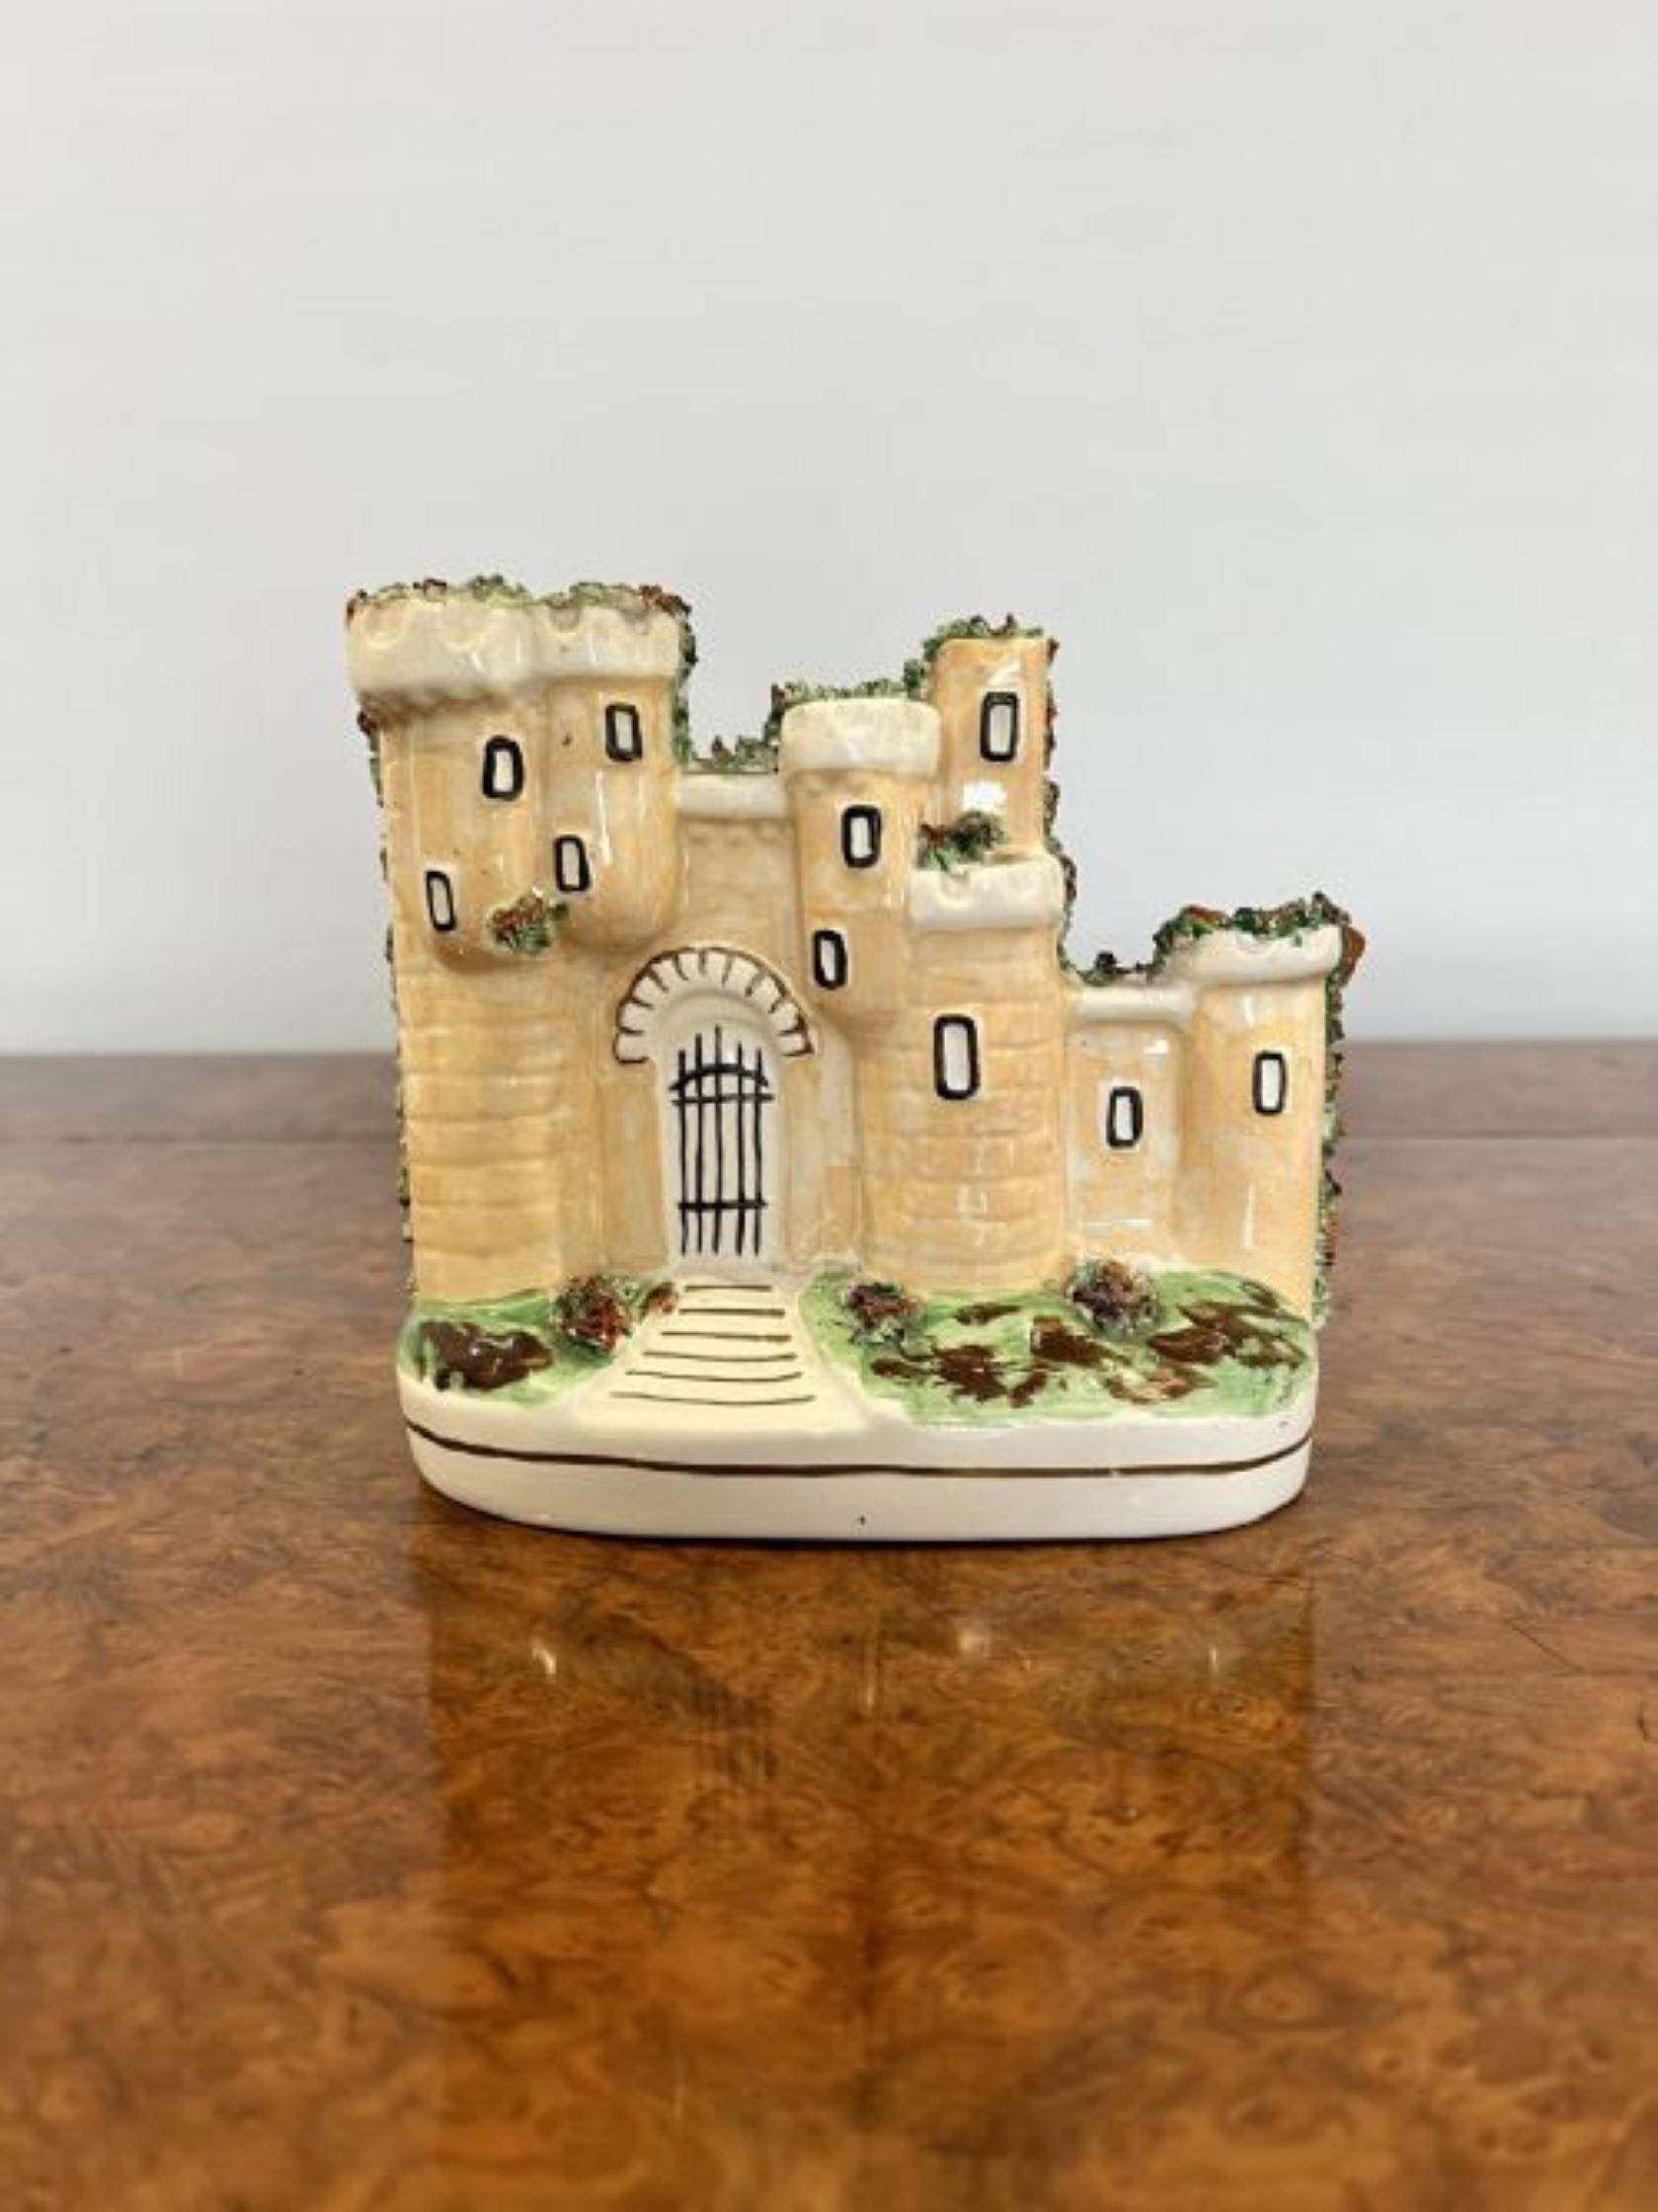 Hochwertiges antikes Staffordshire-Schloss mit einer hochwertigen antiken viktorianischen Staffordshire-Figur eines Schlosses, handbemalt in wunderbaren braunen, grünen, weißen und schwarzen Farben, mit Fenstern, einem Fronttor und Laub, das auf